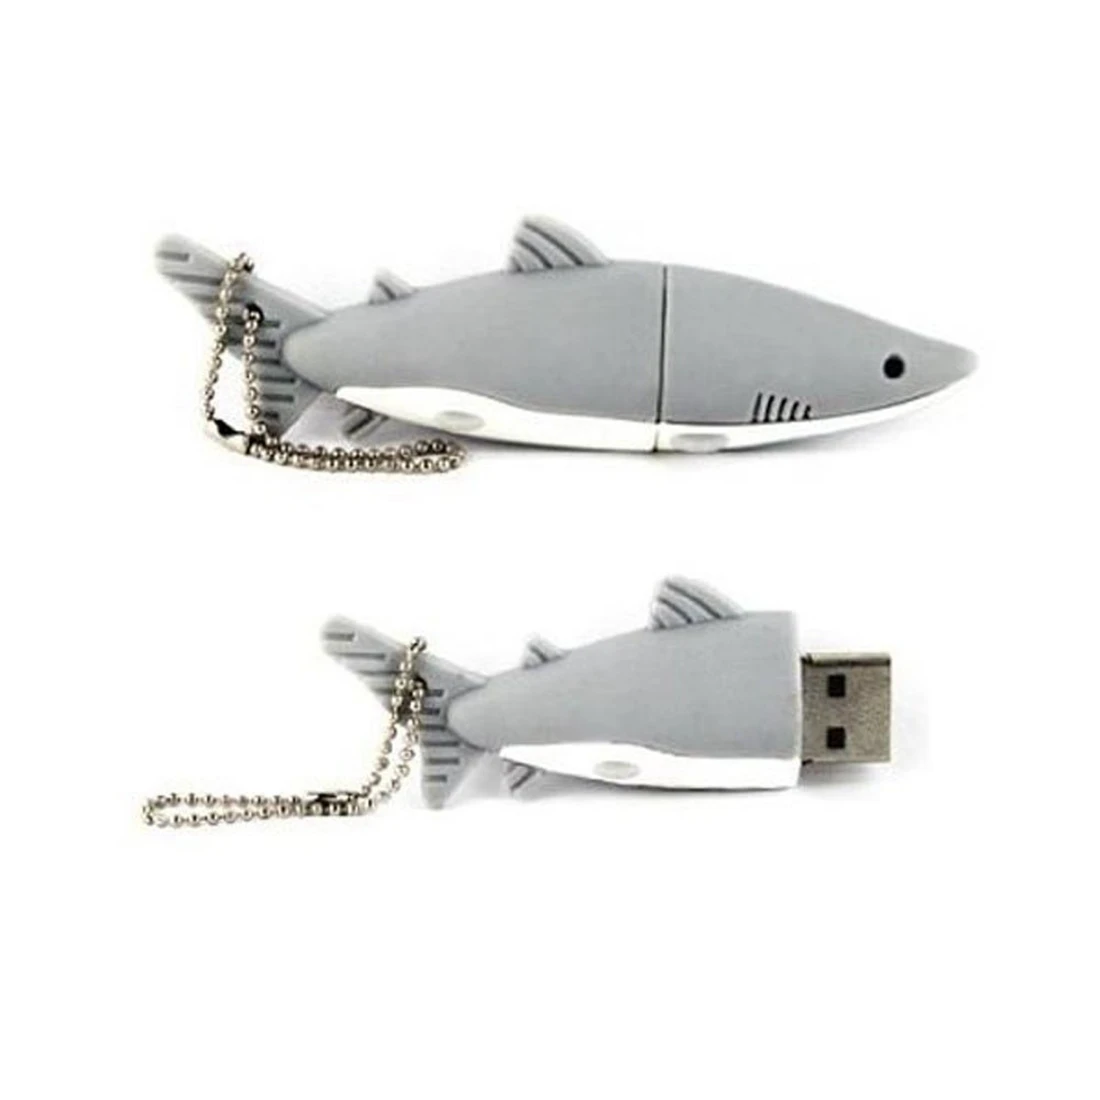 USB 2 0 в форме акулы 8 Гб | Компьютеры и офис